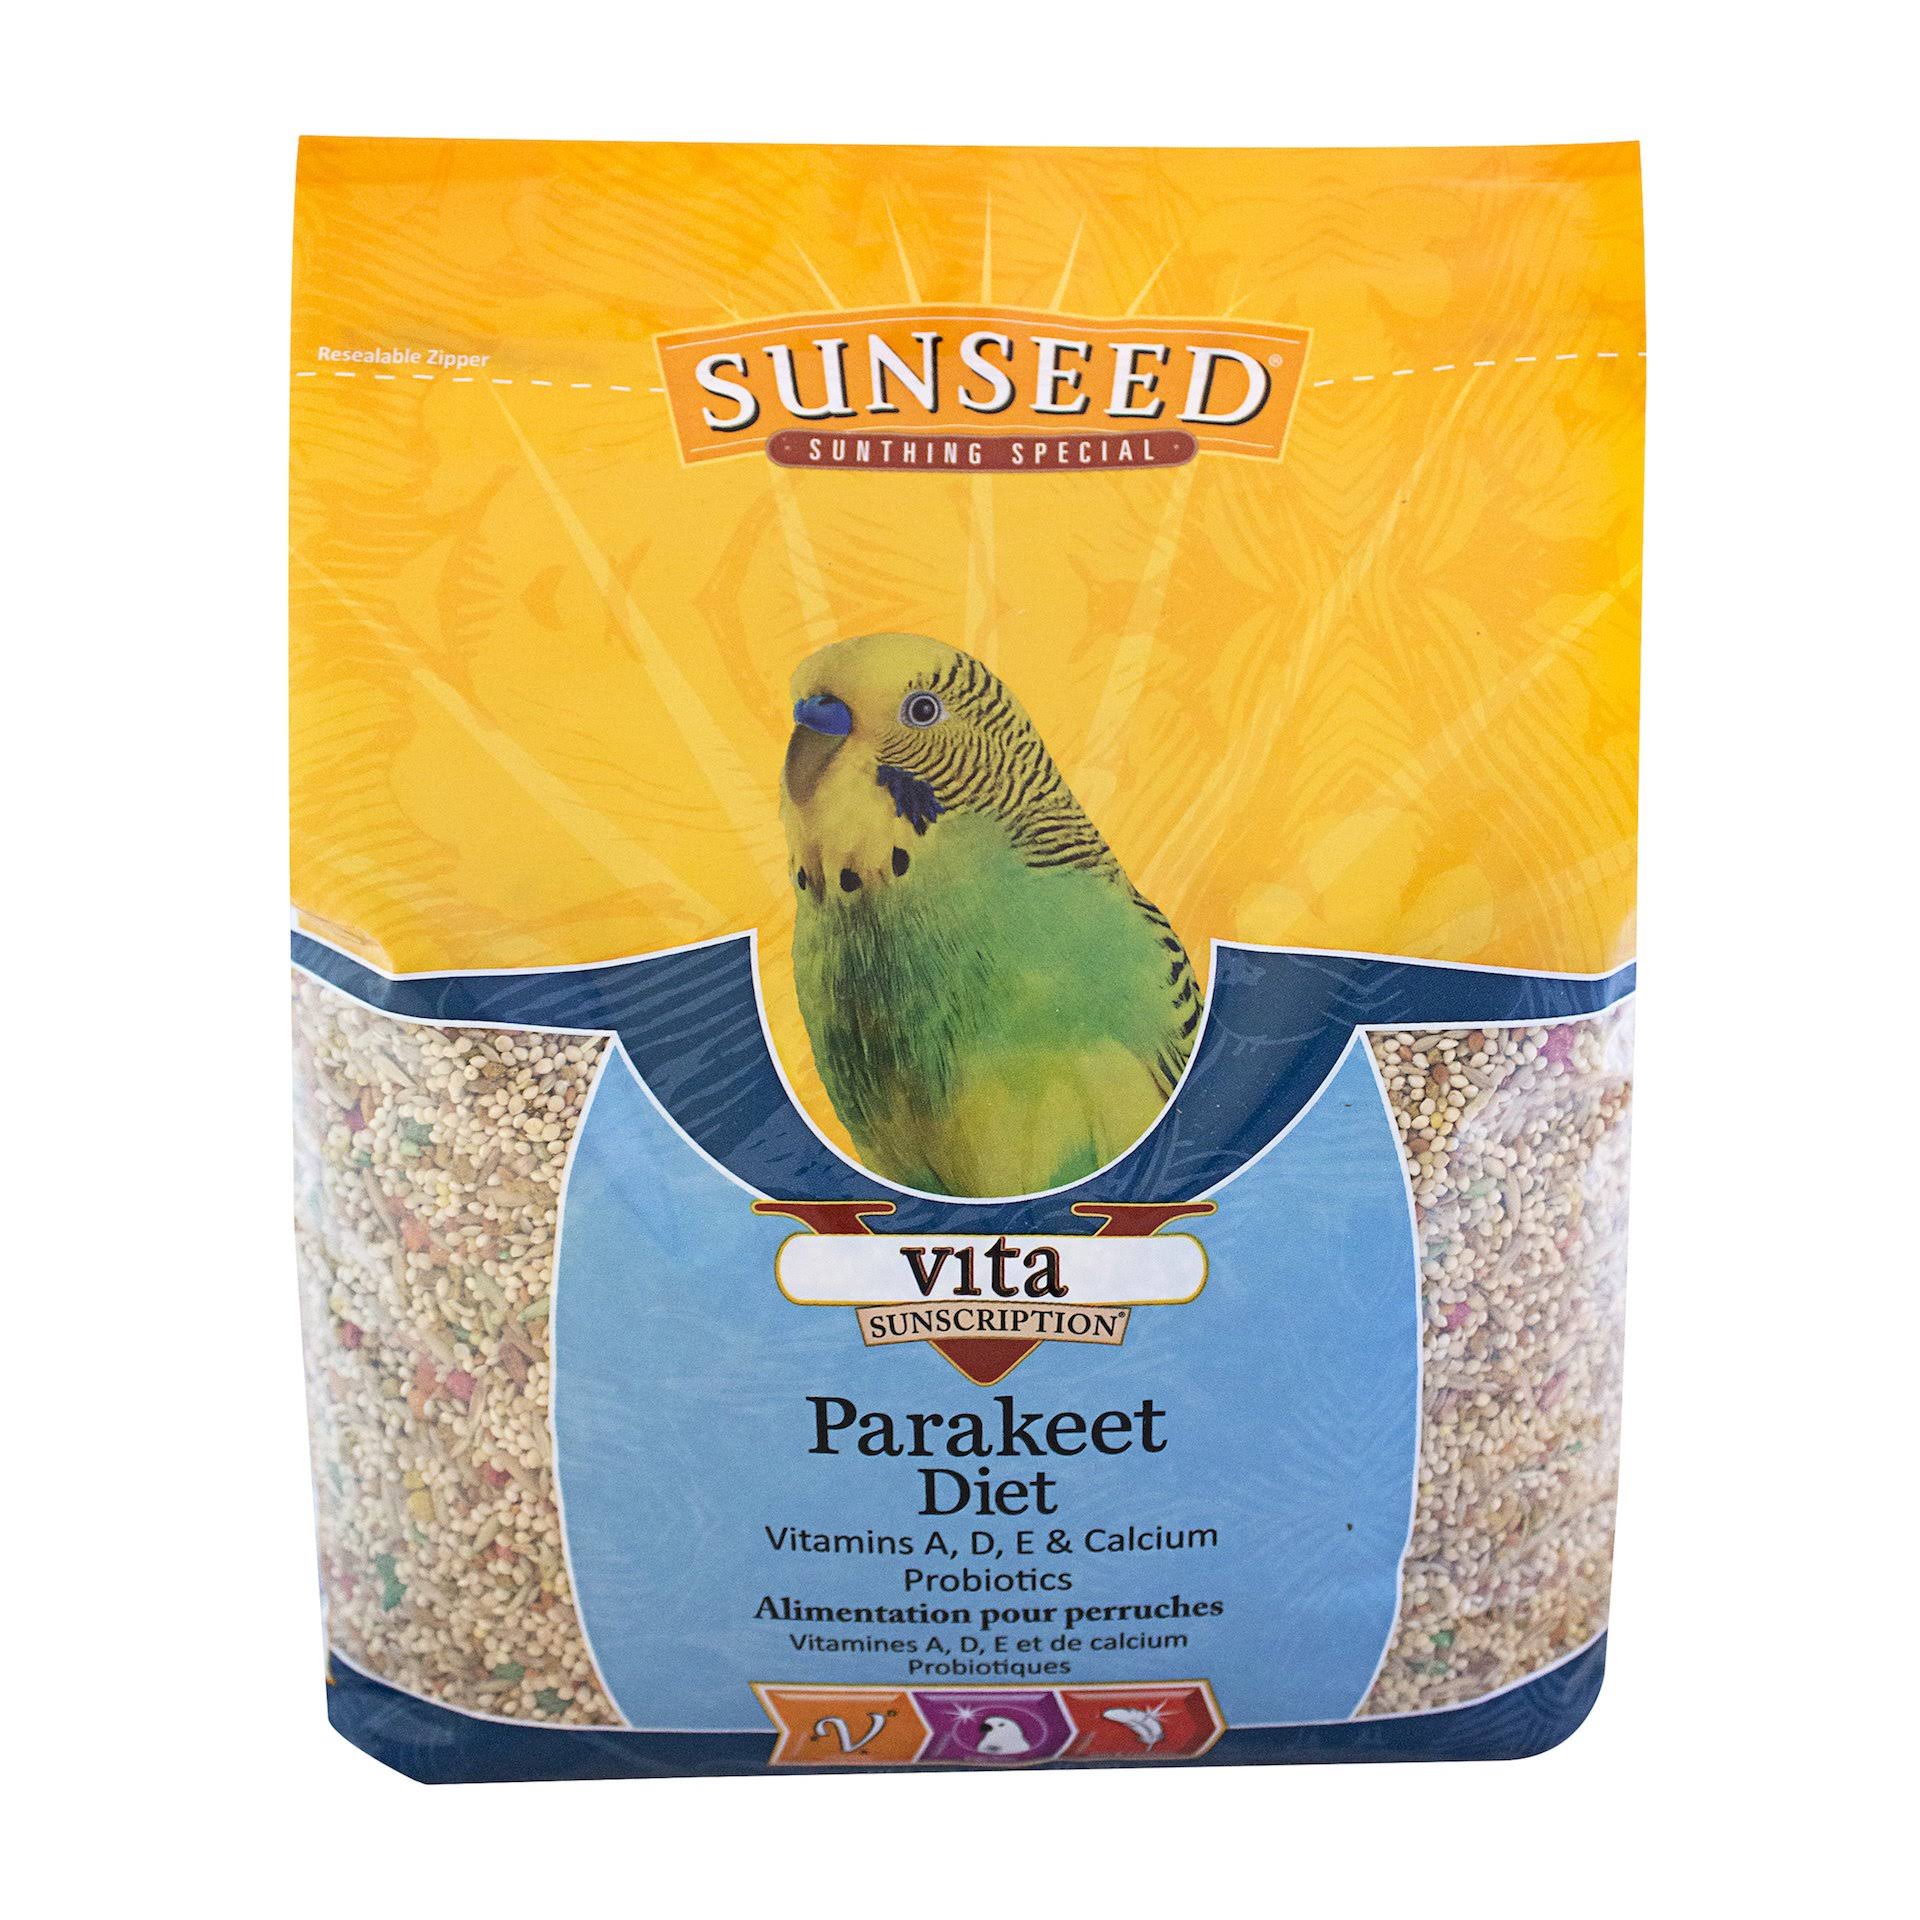 Sunseed Vita Sunscription Parakeet - 5lb.